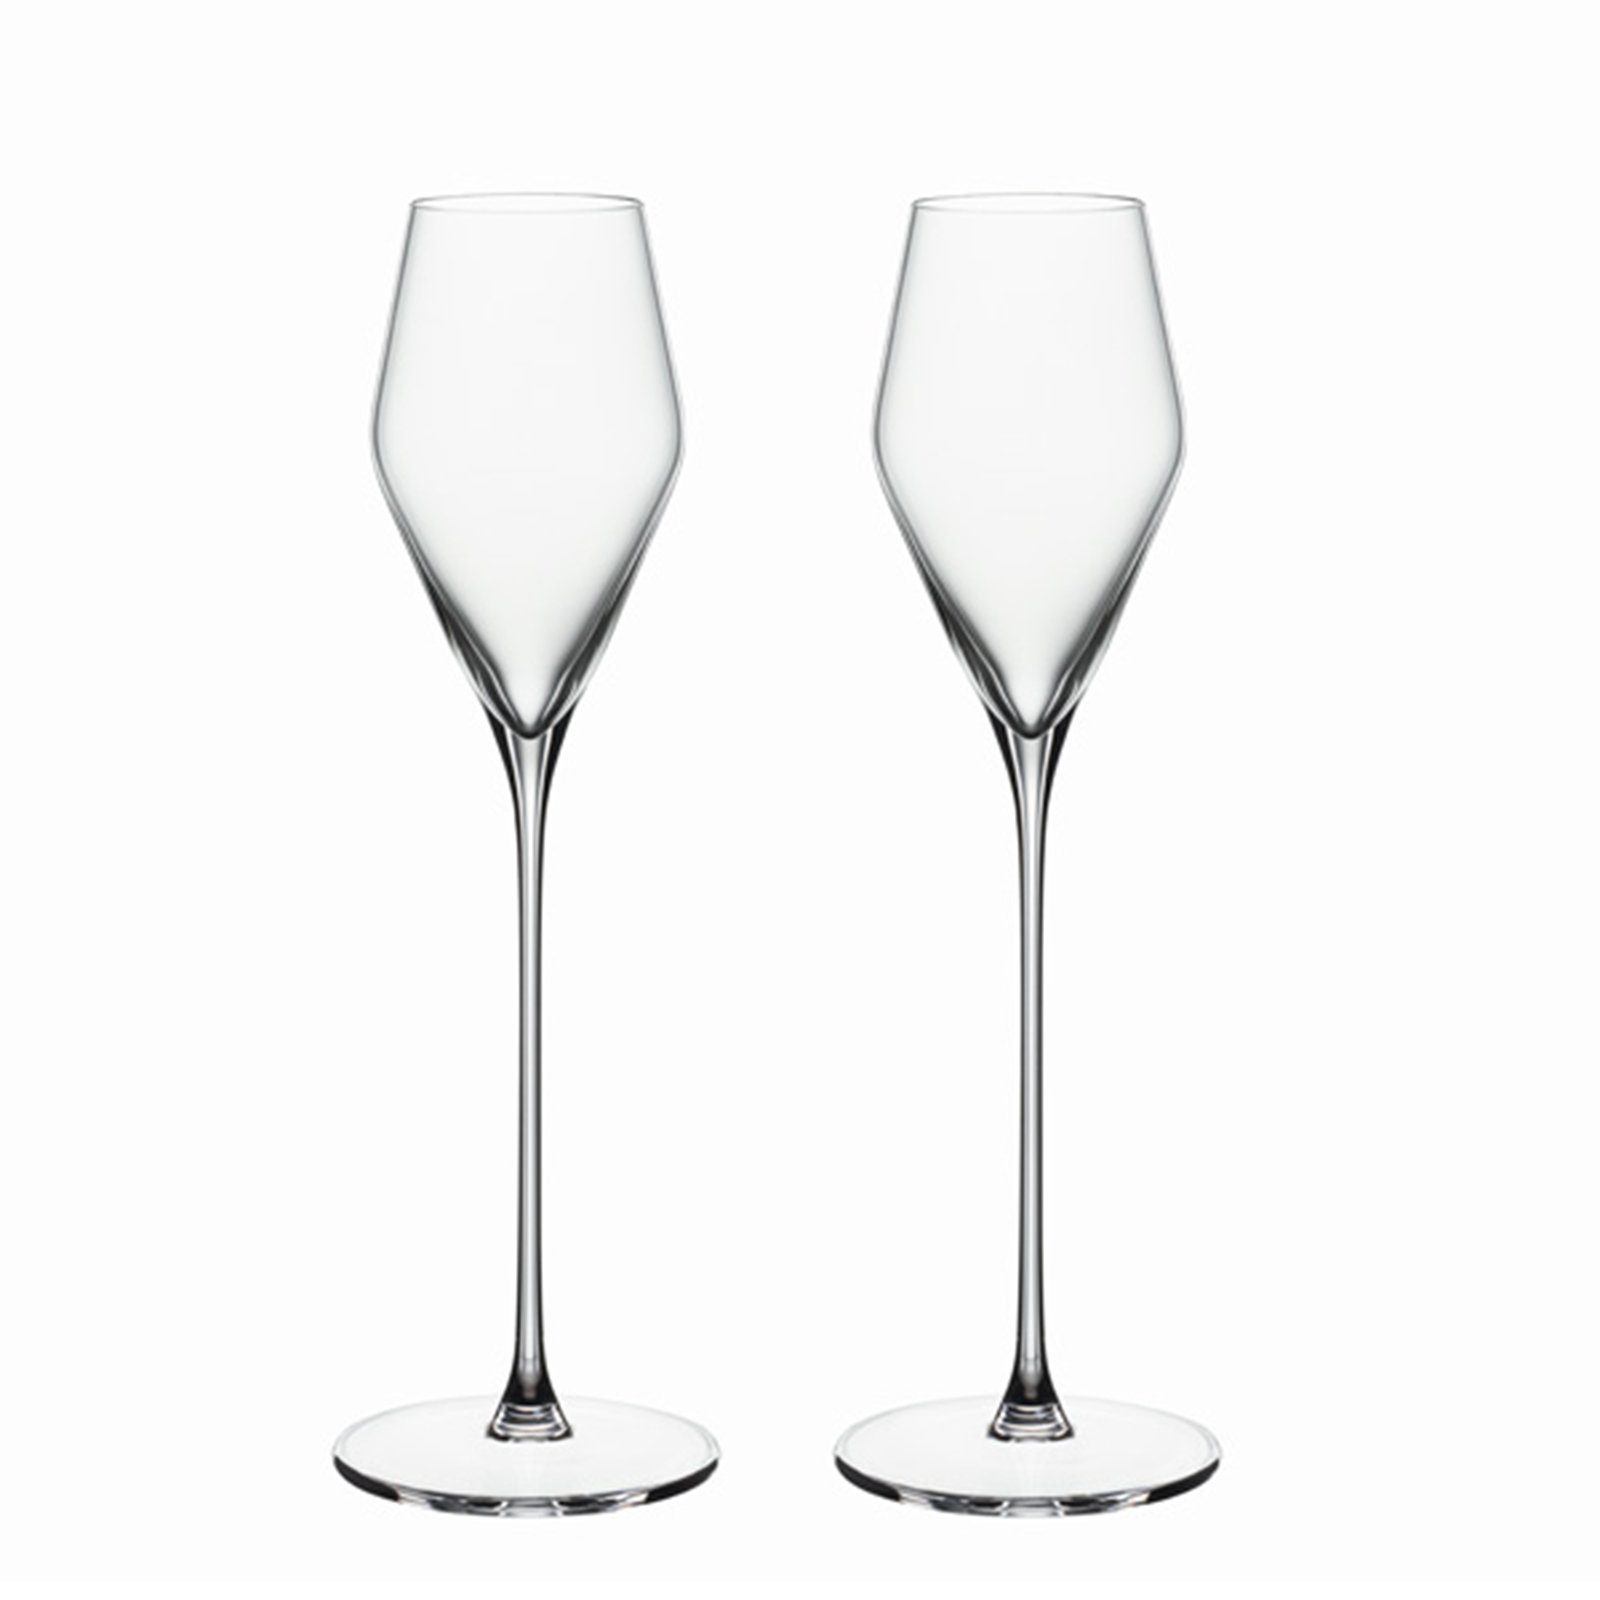 SPIEGELAU Glas Definition, Kristallglas, Zertifiziertes Umweltmanagement  online kaufen | OTTO